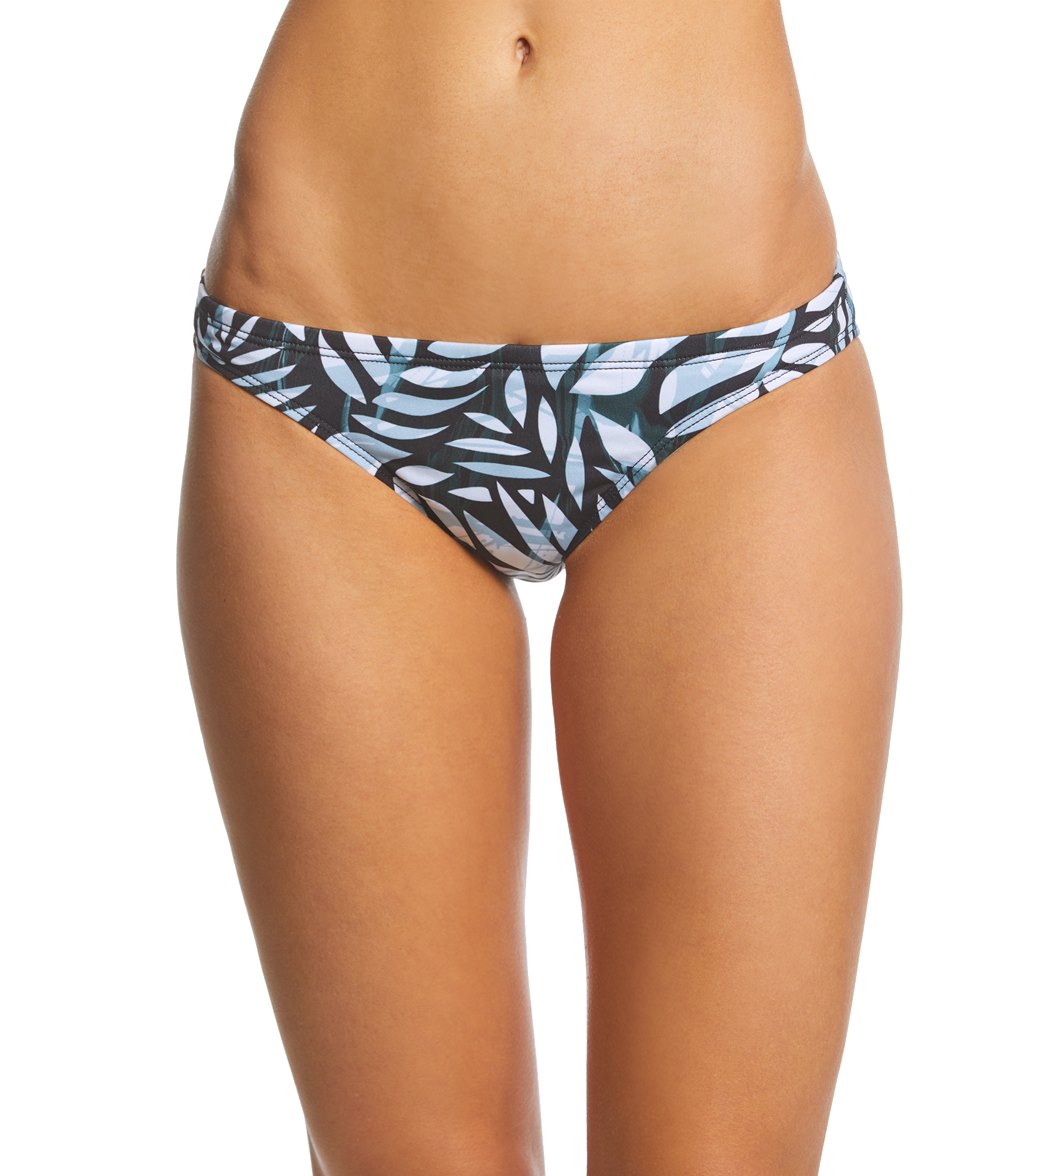 Viva Women's Alicante Bikini Bottom - Tropical Black X-Small Polyester - Swimoutlet.com